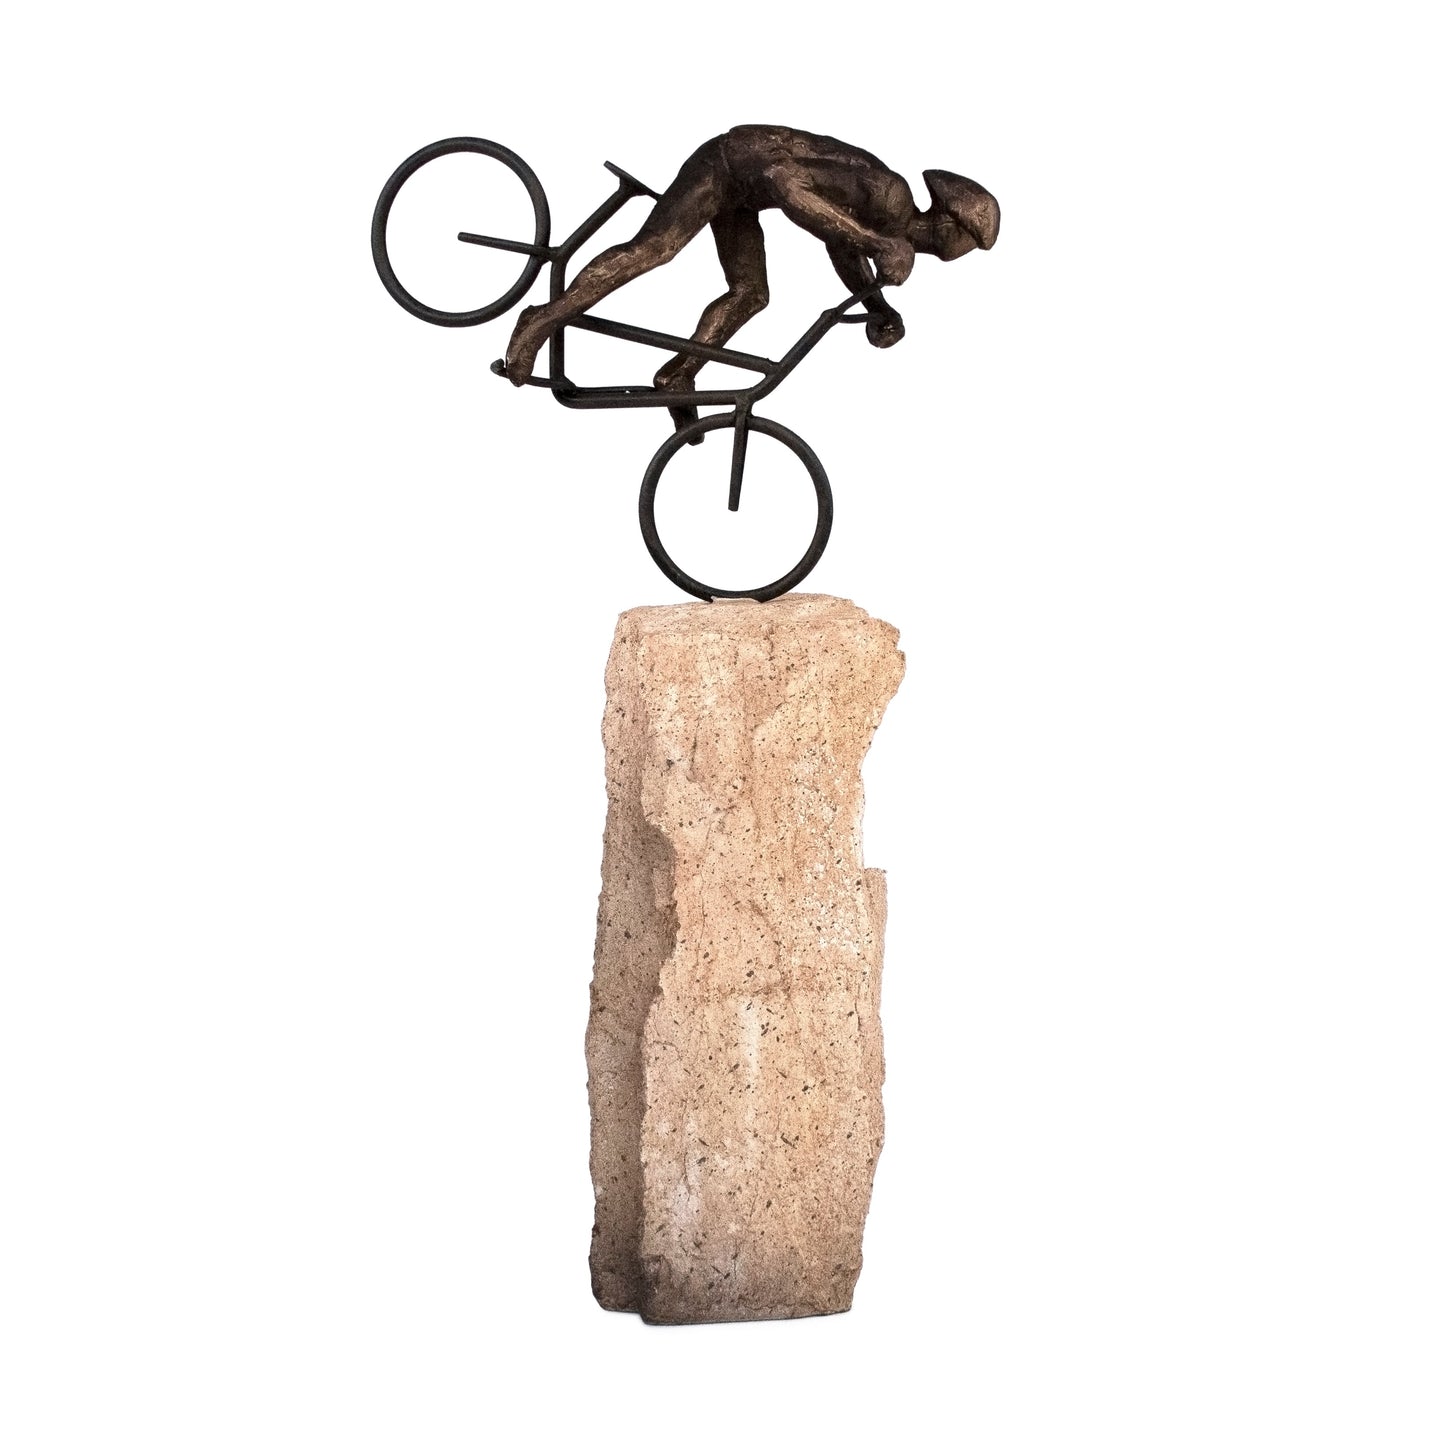 Nose Wheelie Biker on Rock Figurine